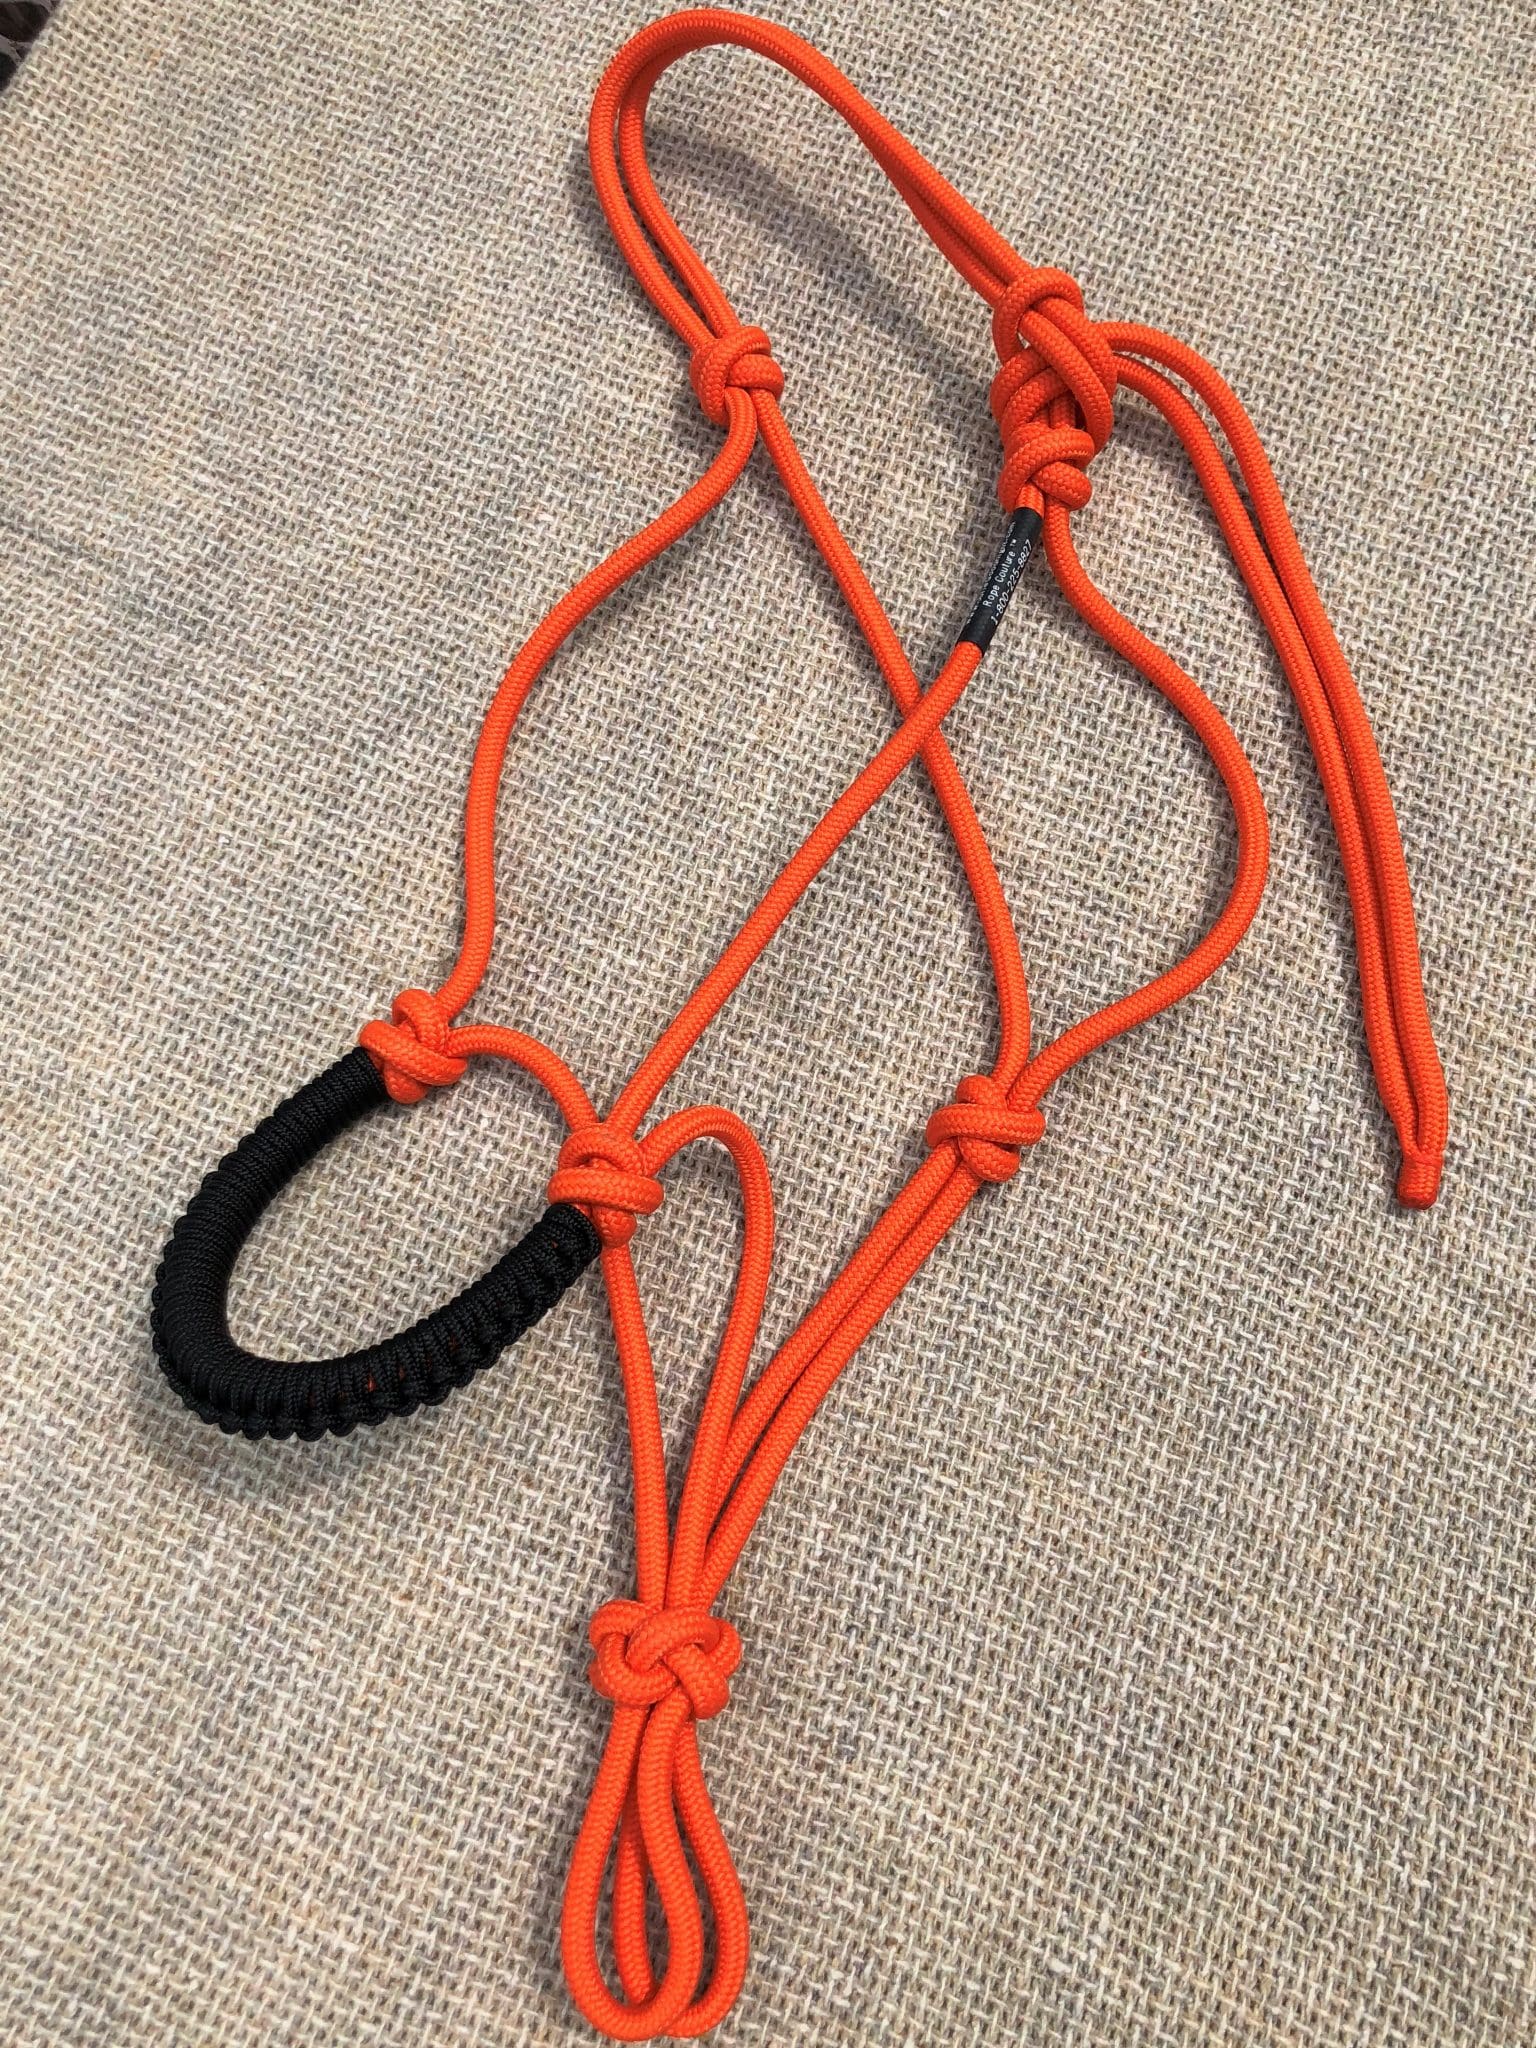 Orange halter with black round noseband